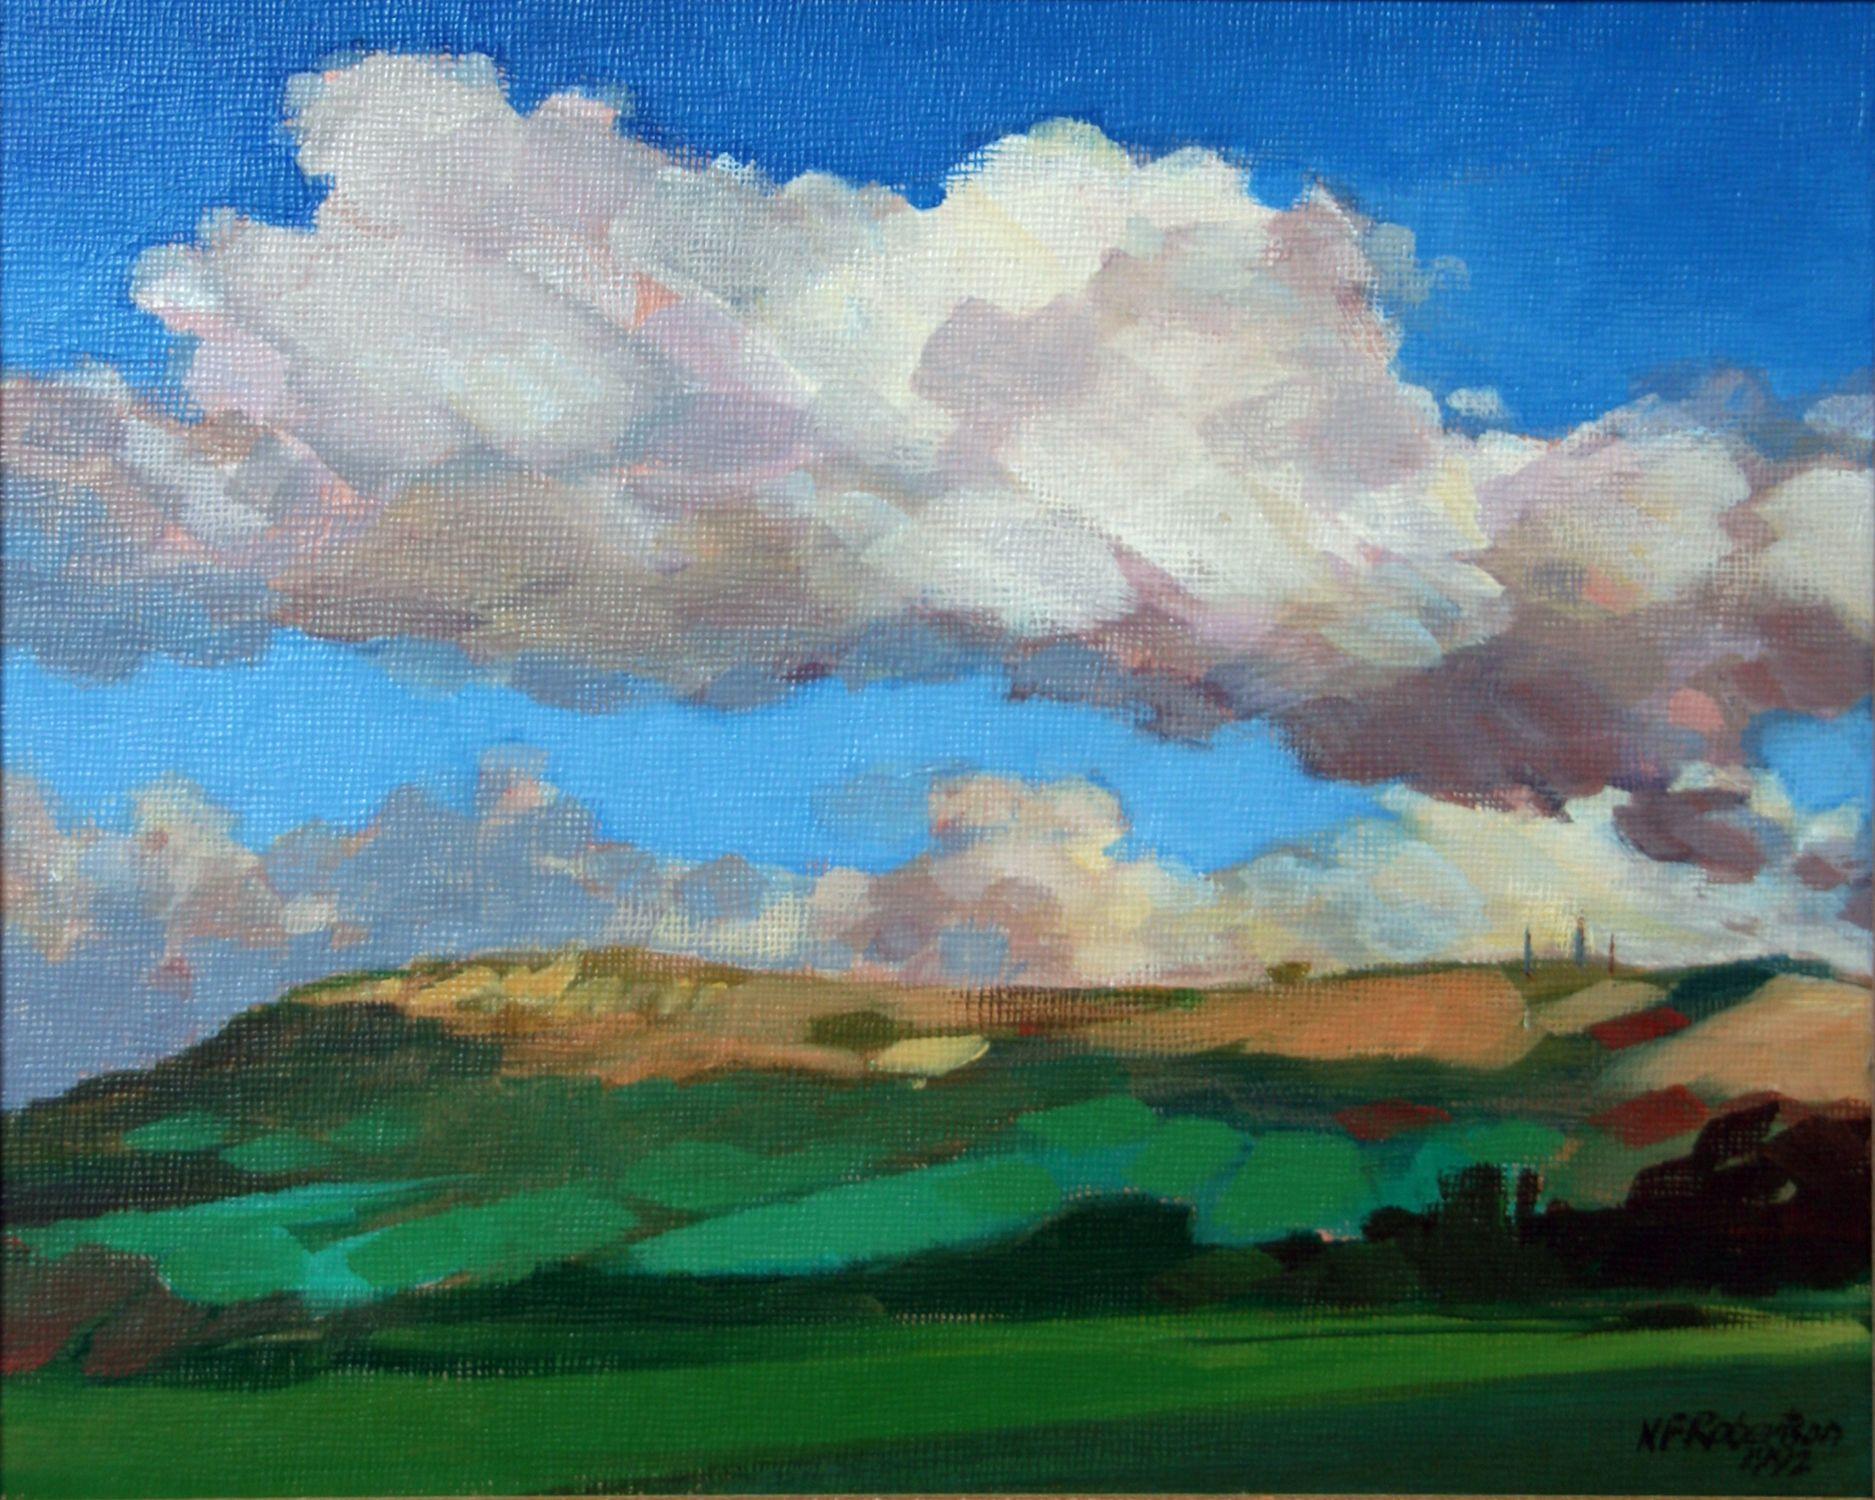 Landscape Painting Nicholas Robertson - Peinture, acrylique sur toile, nuage de Cléeve